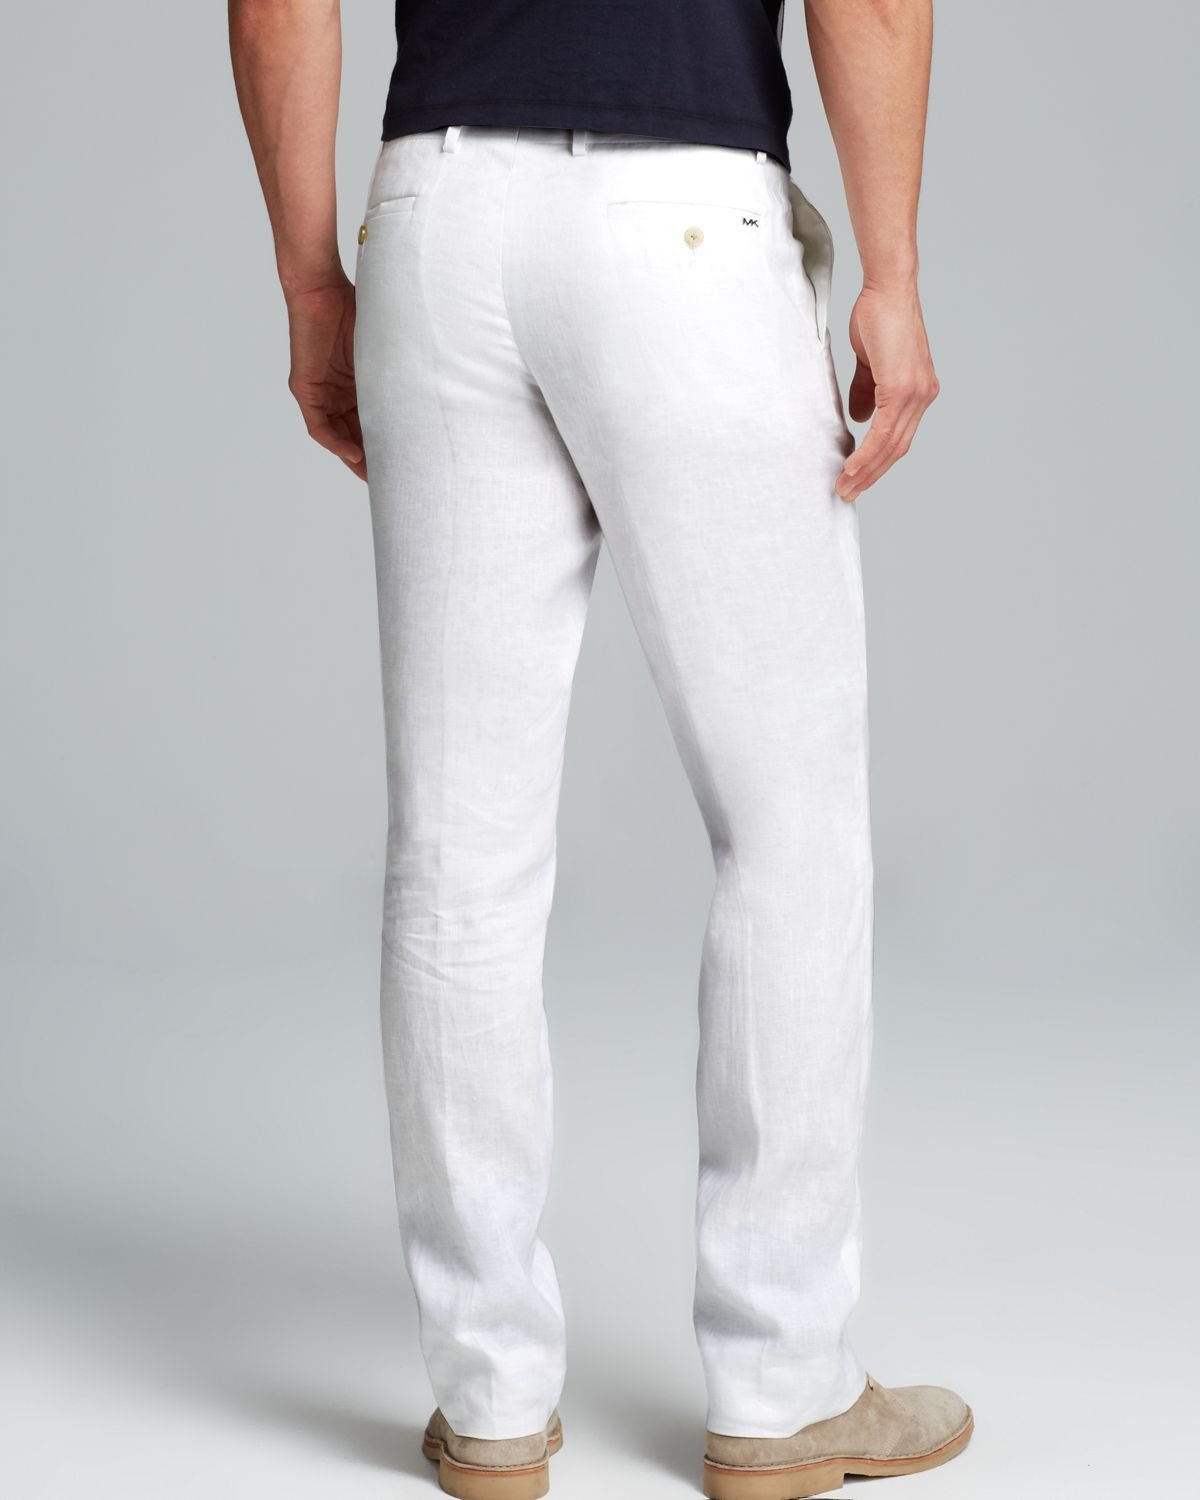 Michael Kors Linen Modern Fit Pants in White for Men - Lyst